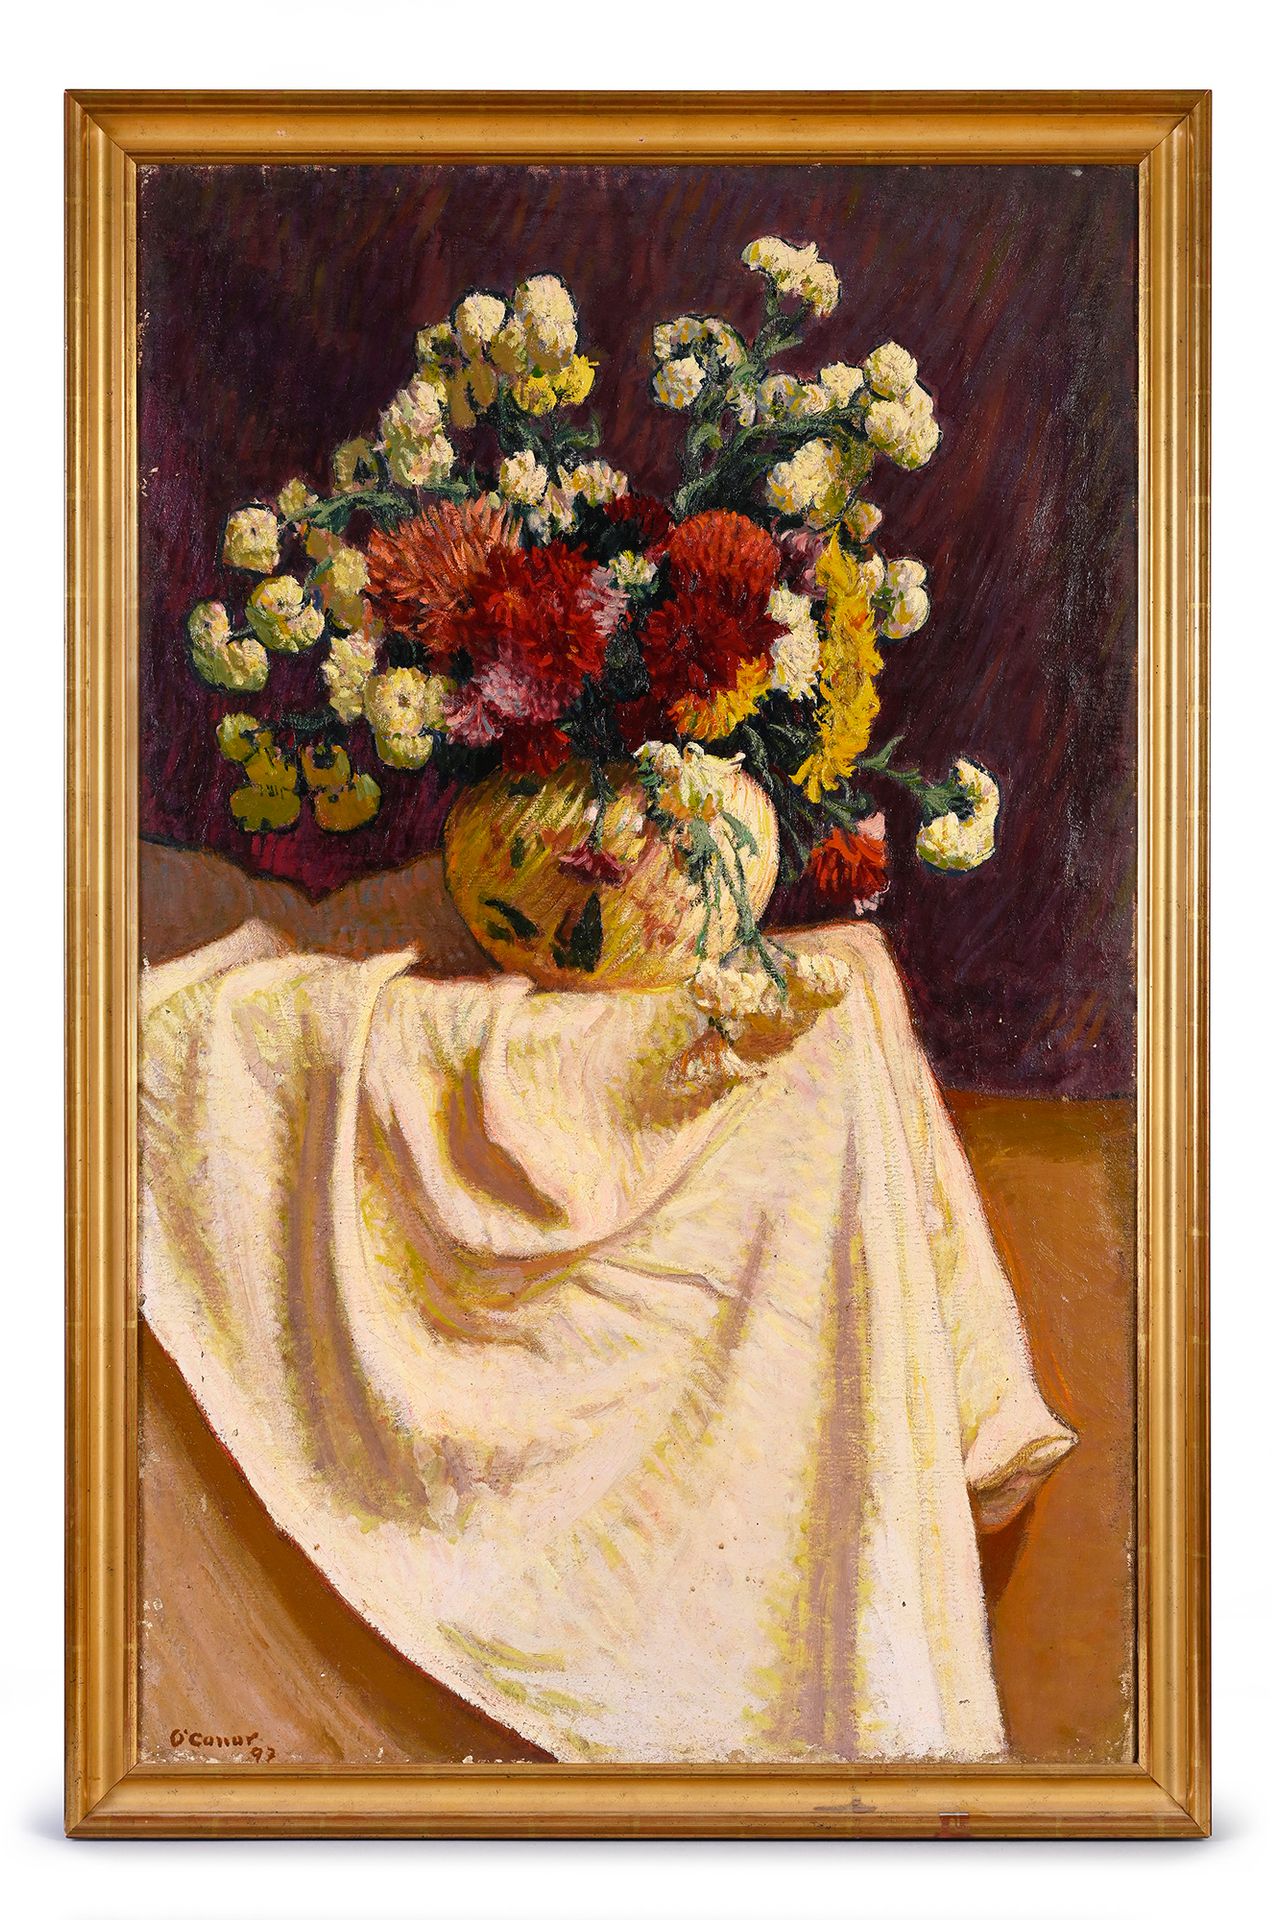 Roderic O'CONOR (1860-1940) et collaboration d'une autre main 花瓶
布面油画。
左下角有签名和可能&hellip;